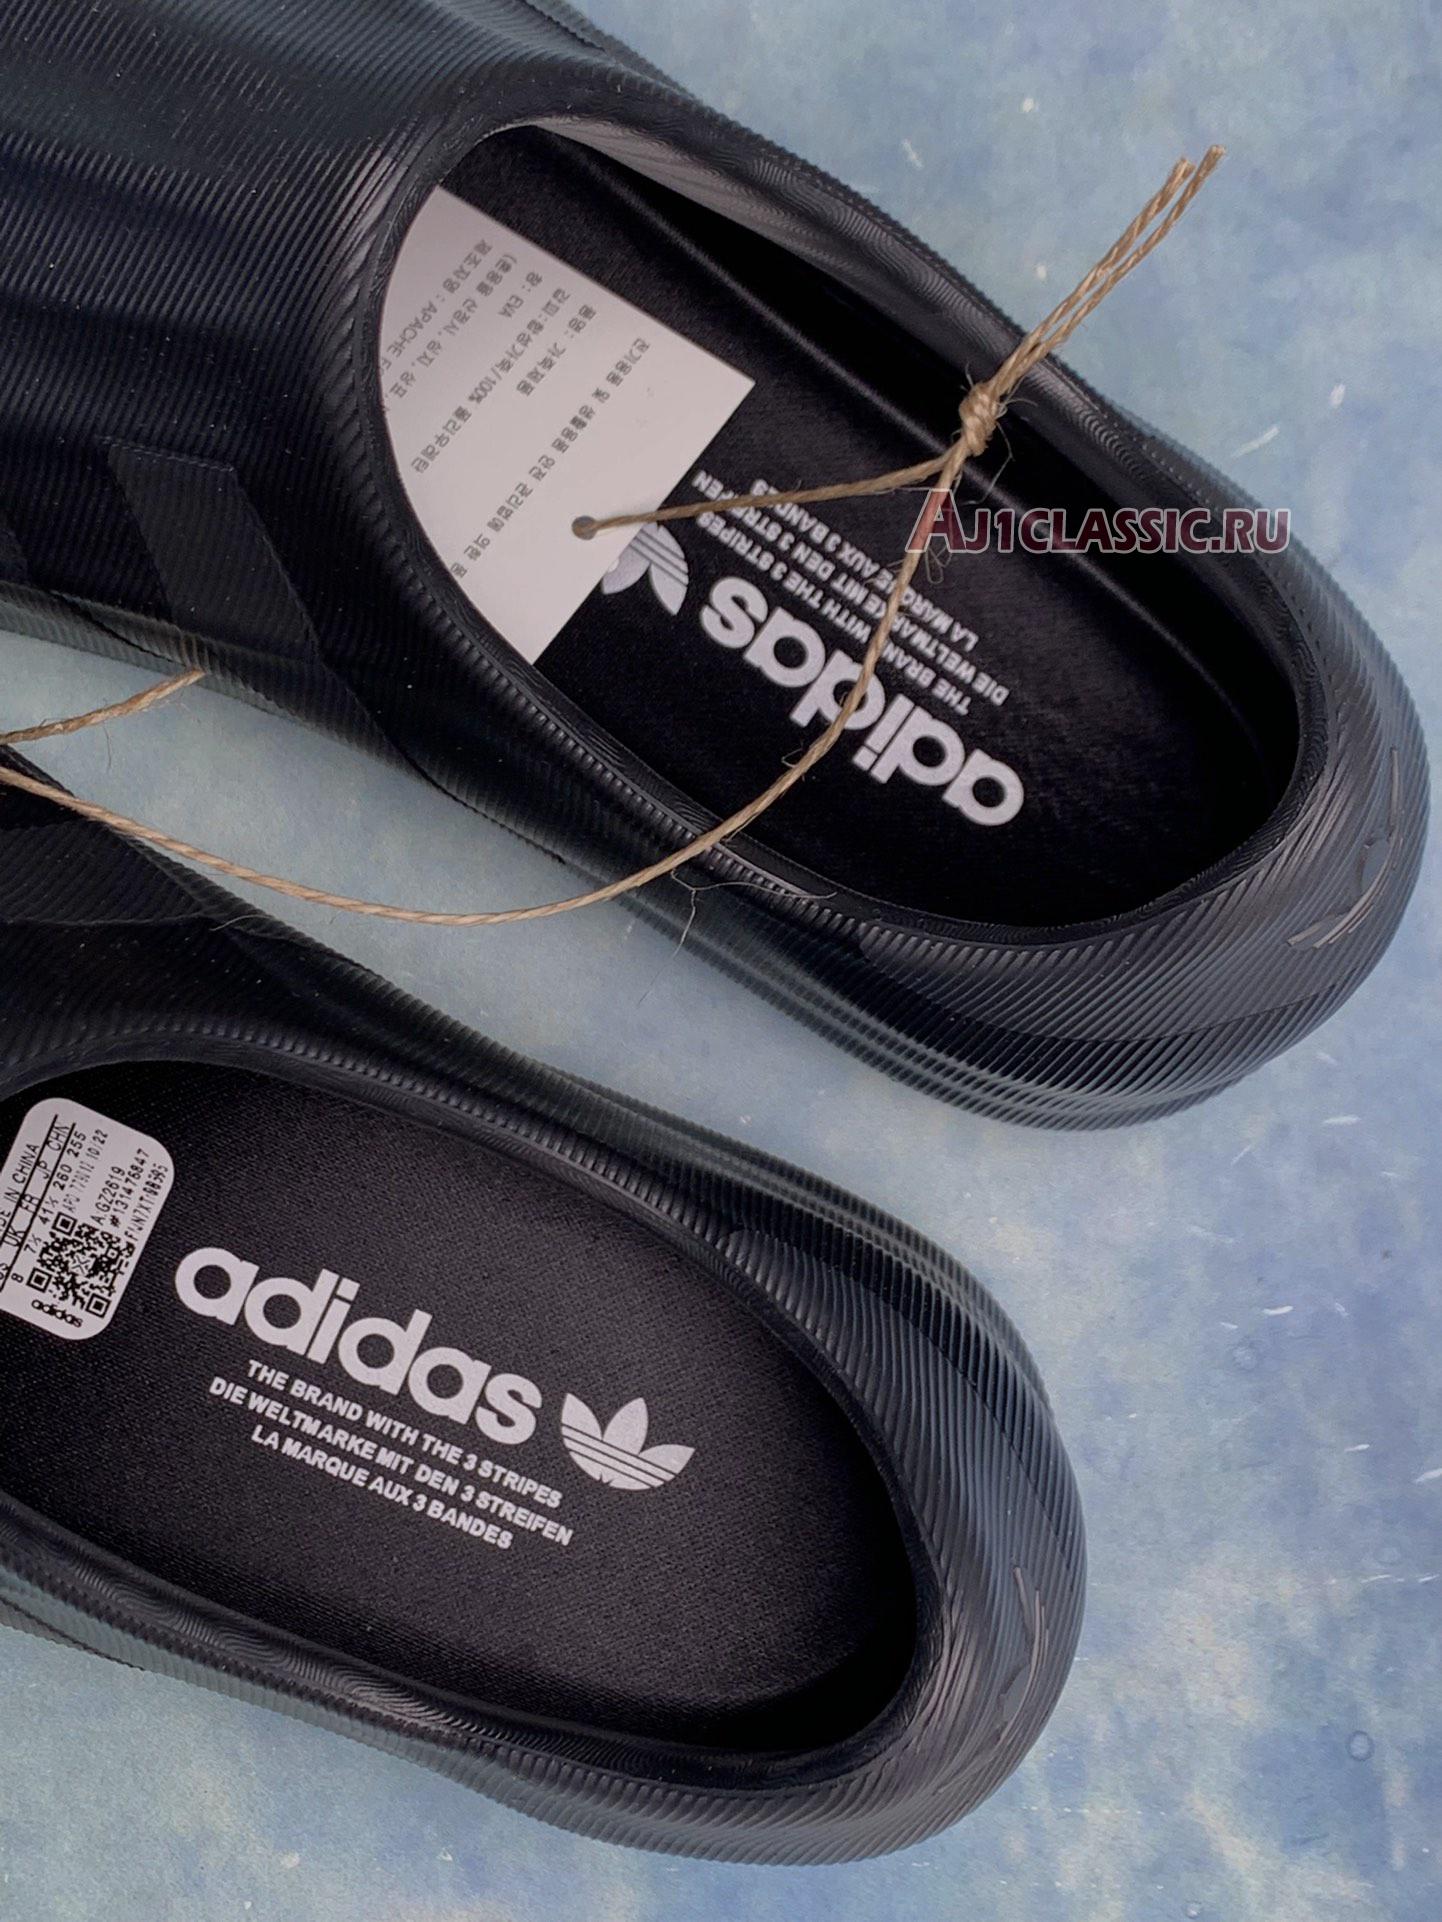 Adidas adiFOM Superstar "Triple Black" GZ2619